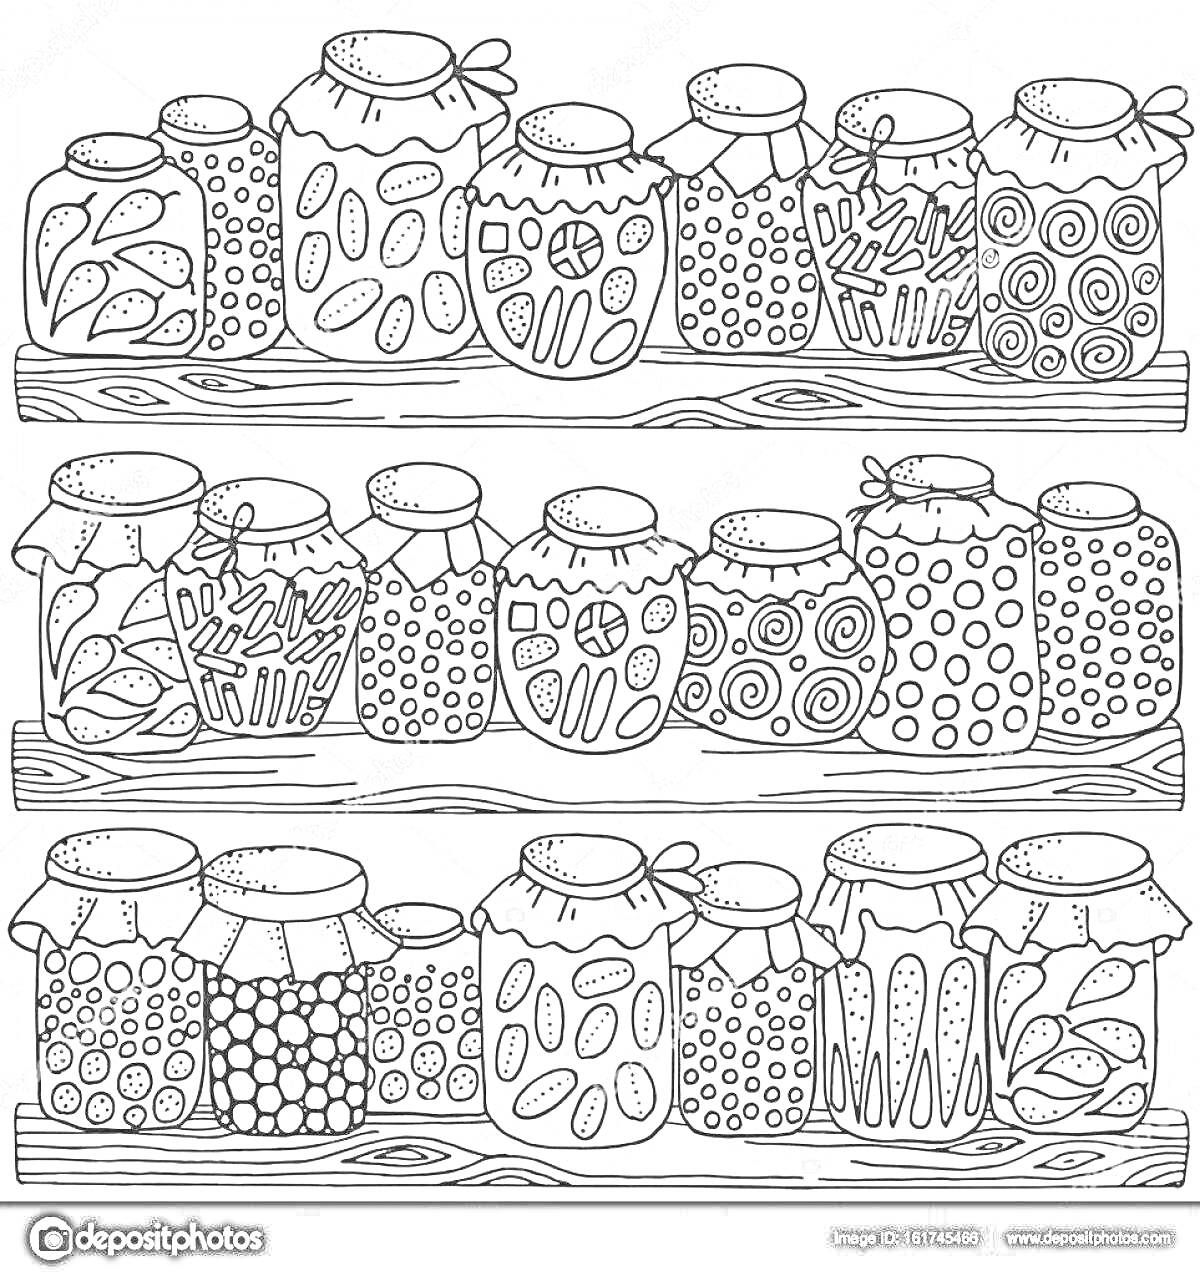 Раскраска Стеллаж с банками домашней консервации (варенье, соленья)